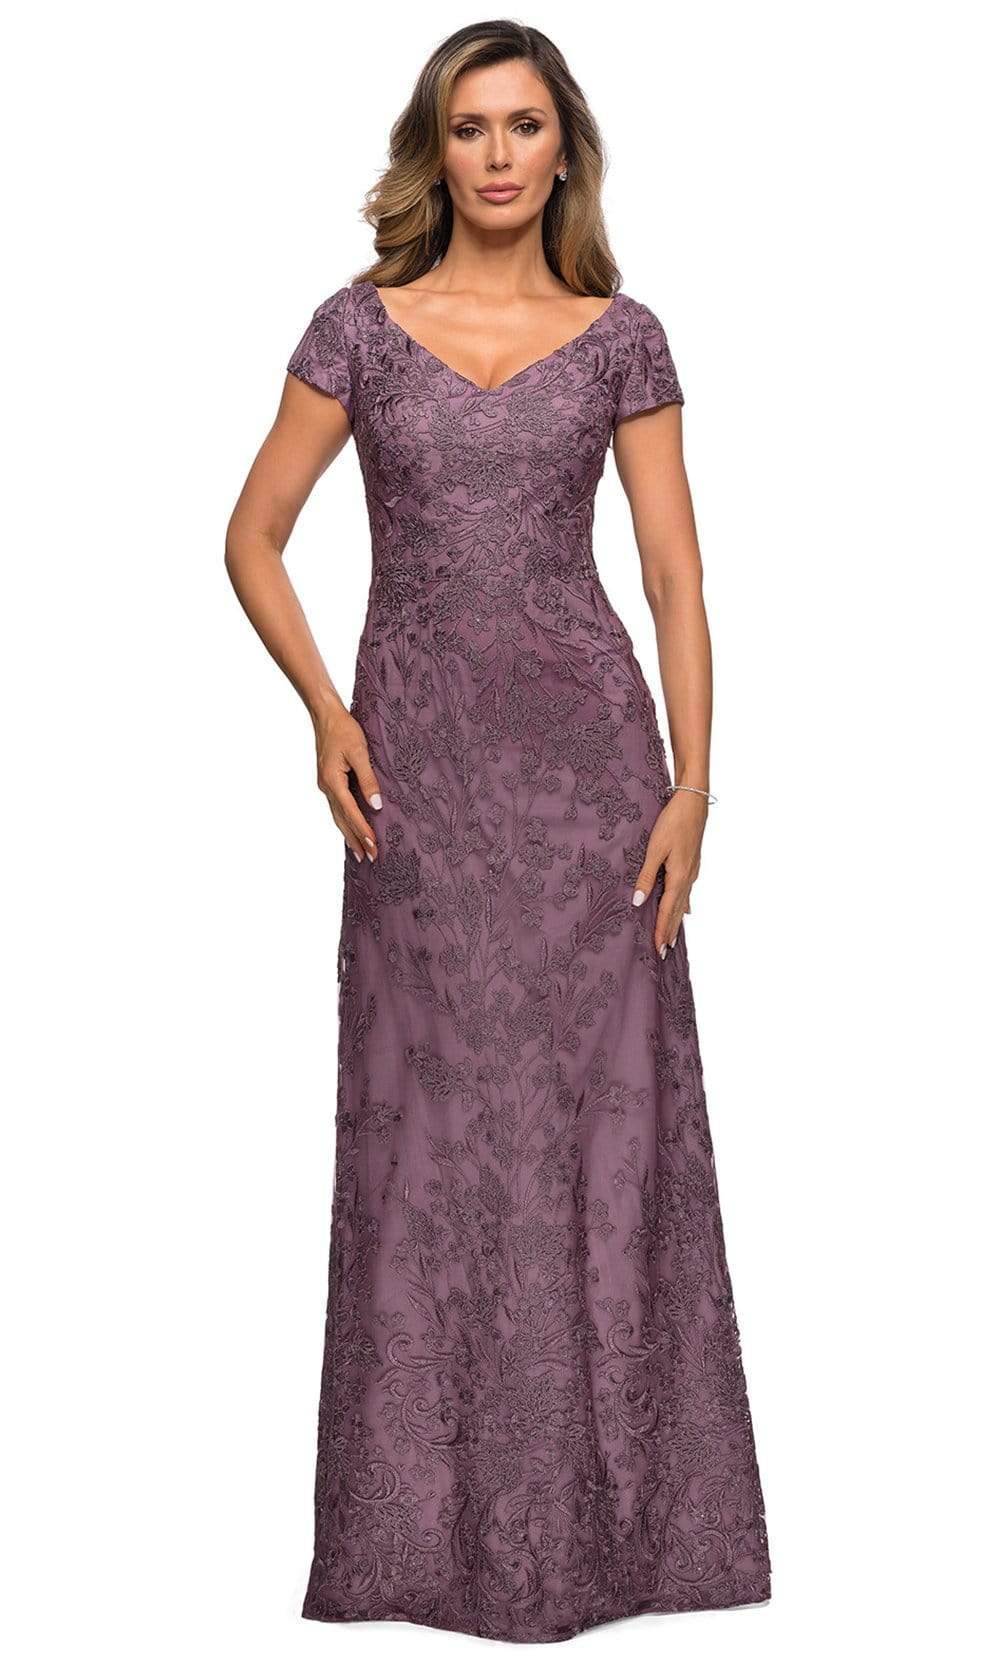 Image of La Femme - 27915 Short Sleeve Floral Embroidered Dress